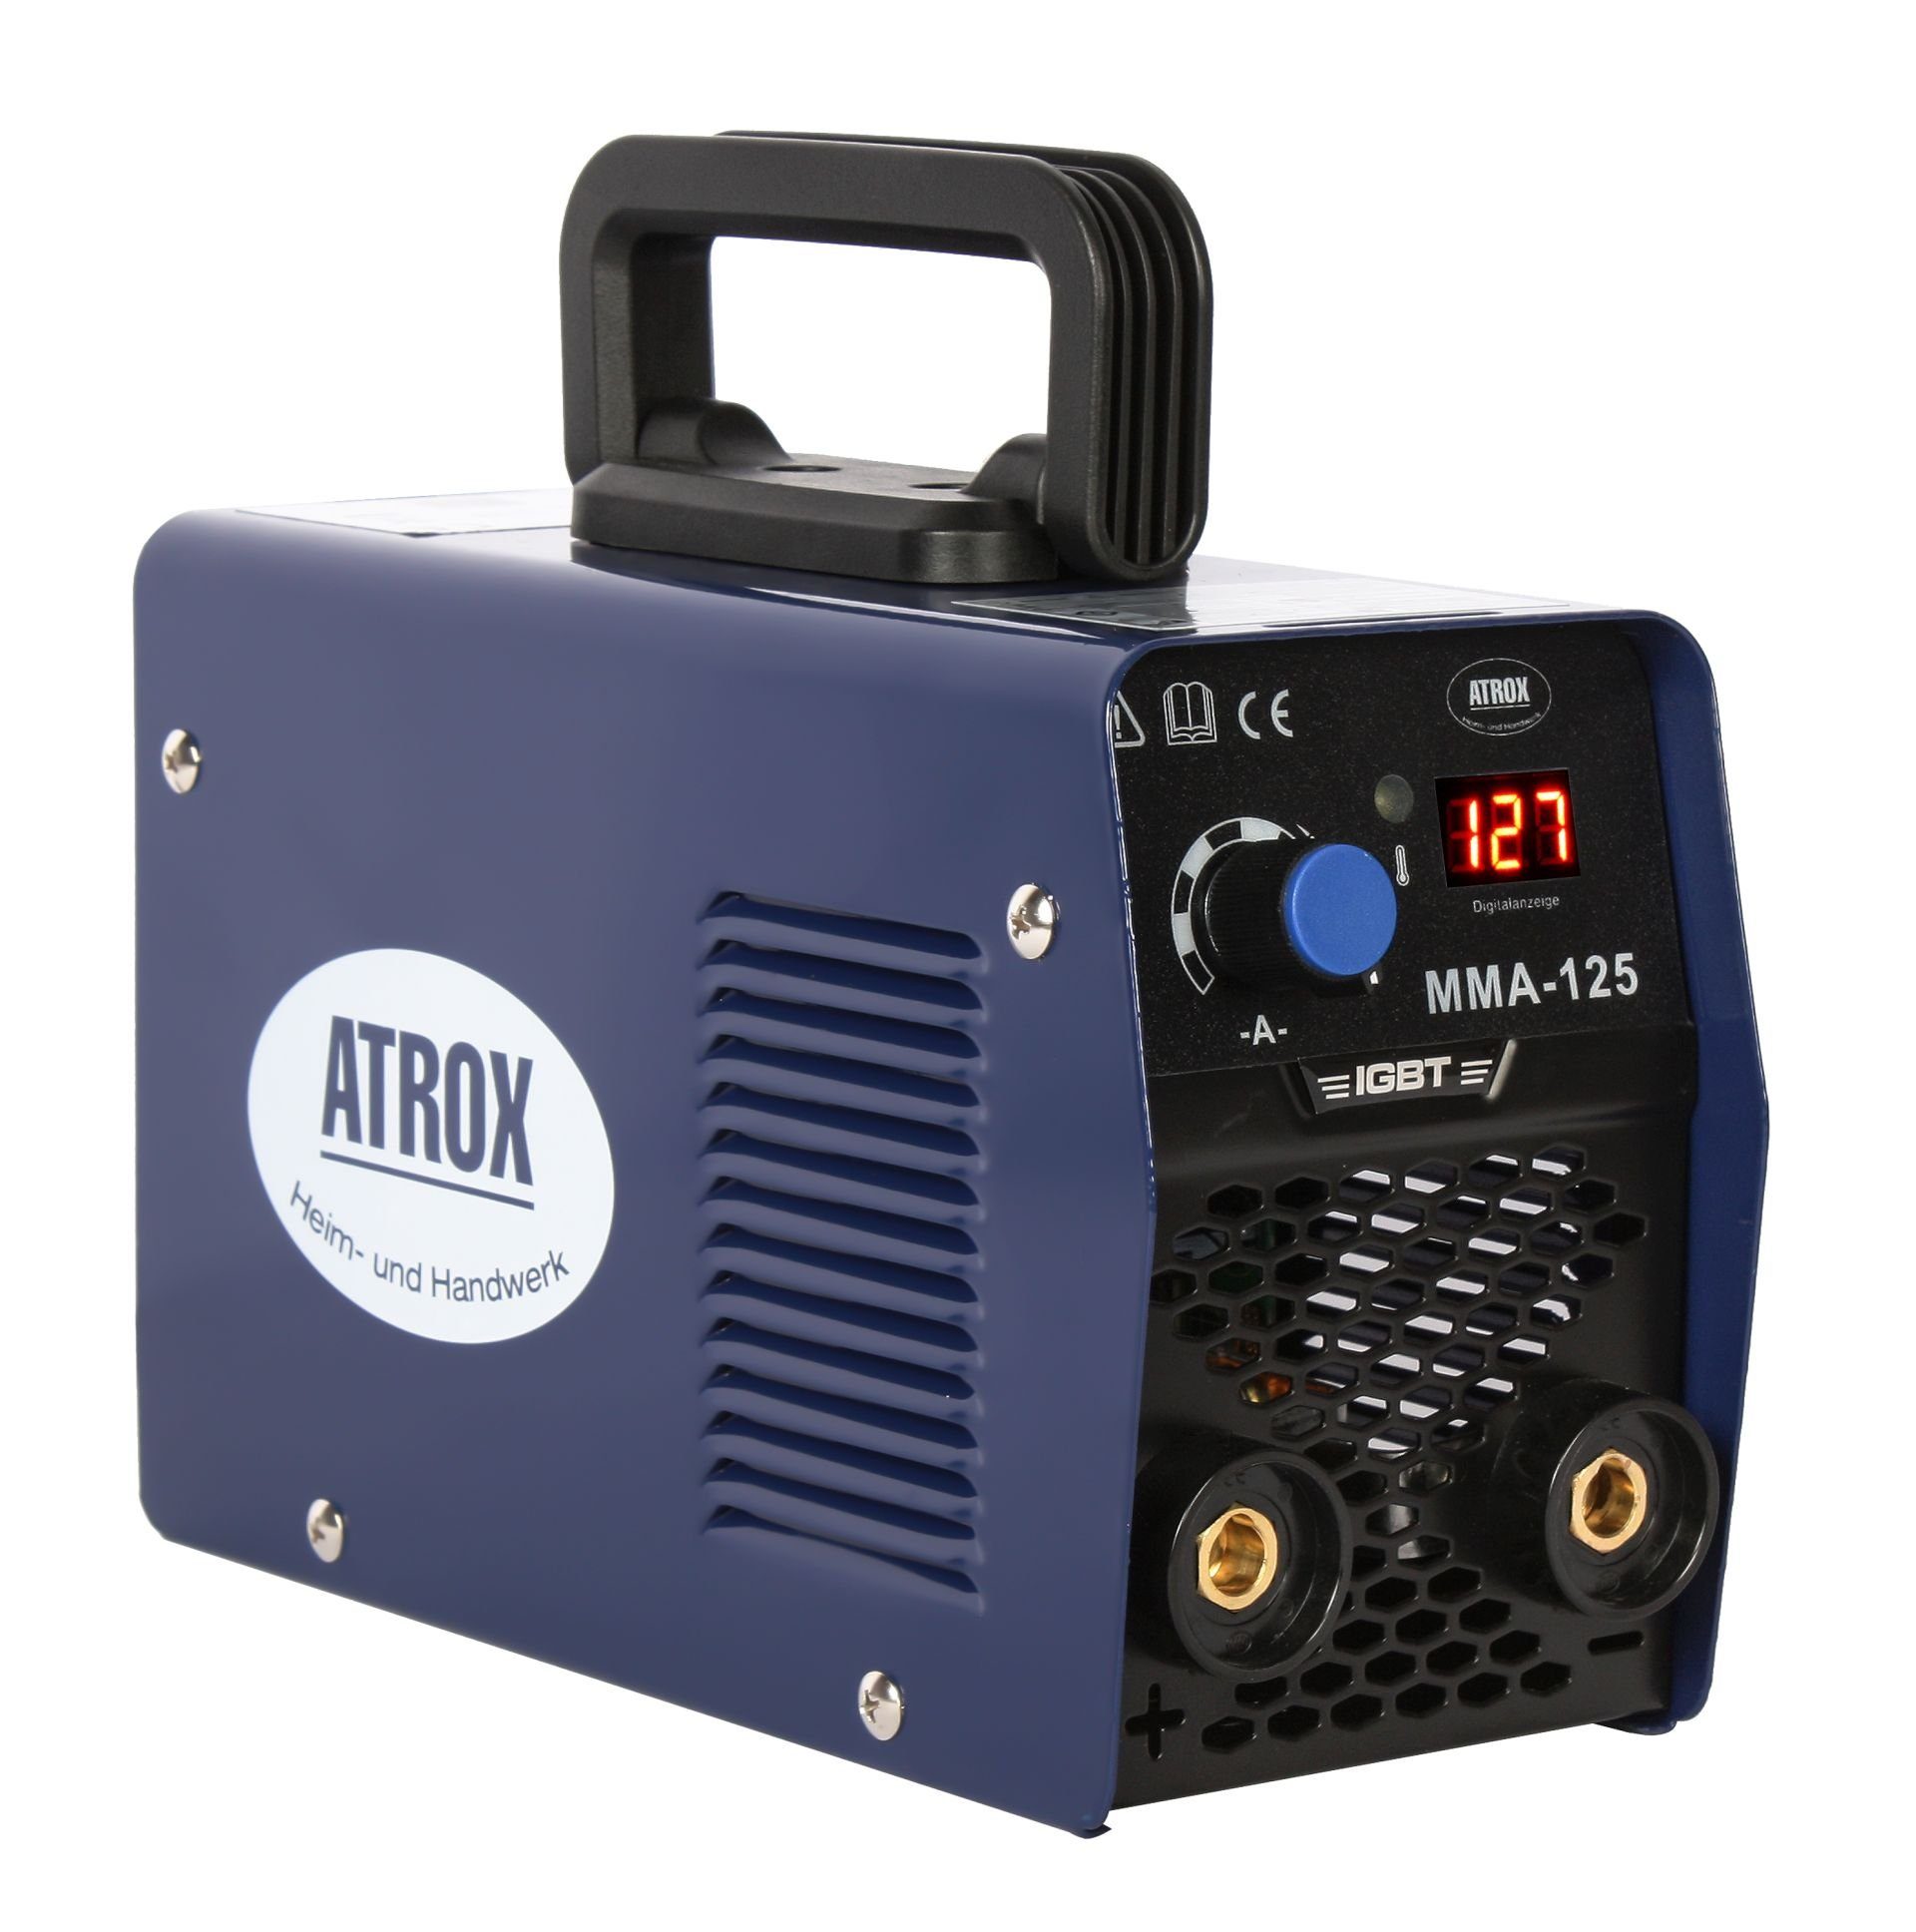 Zubehör, Atrox - A inkl. 20,00 ATROX IGBT von Inverterschweißgerät Inverter-Schweißgerät viel 120,00